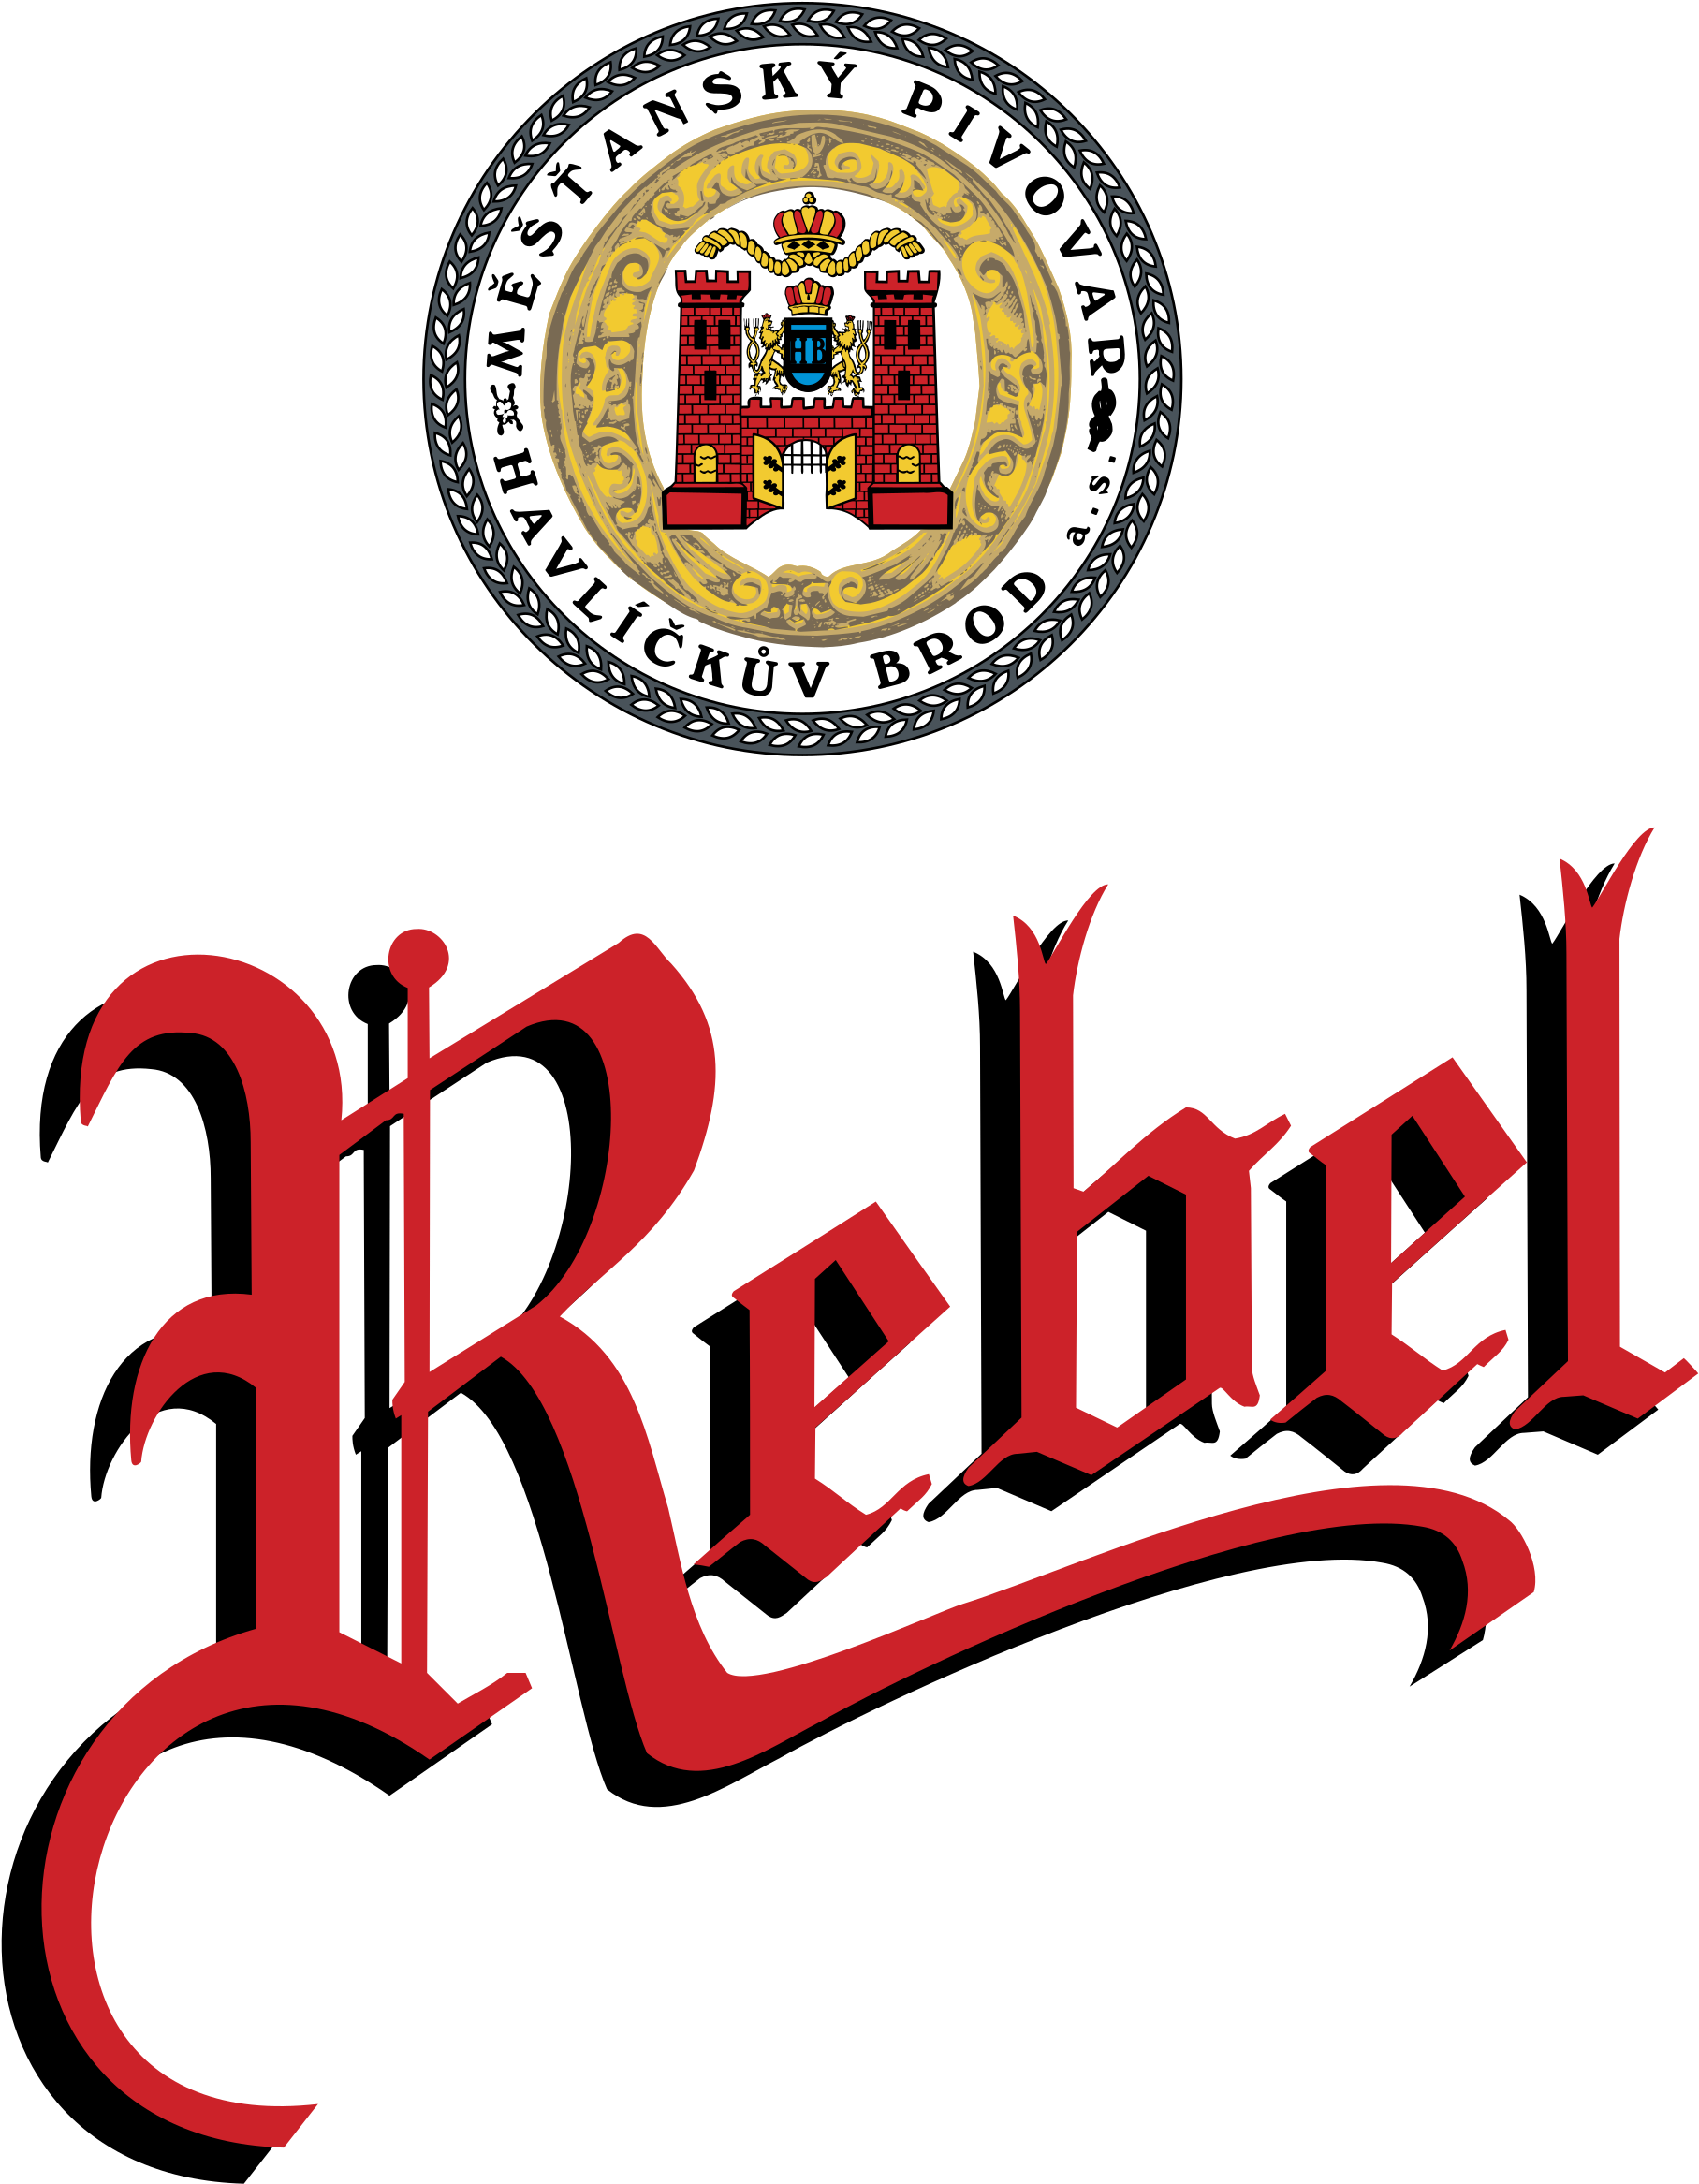 Rebel Logo Png Transparent - Rebel Logos - Free Transparent PNG ...